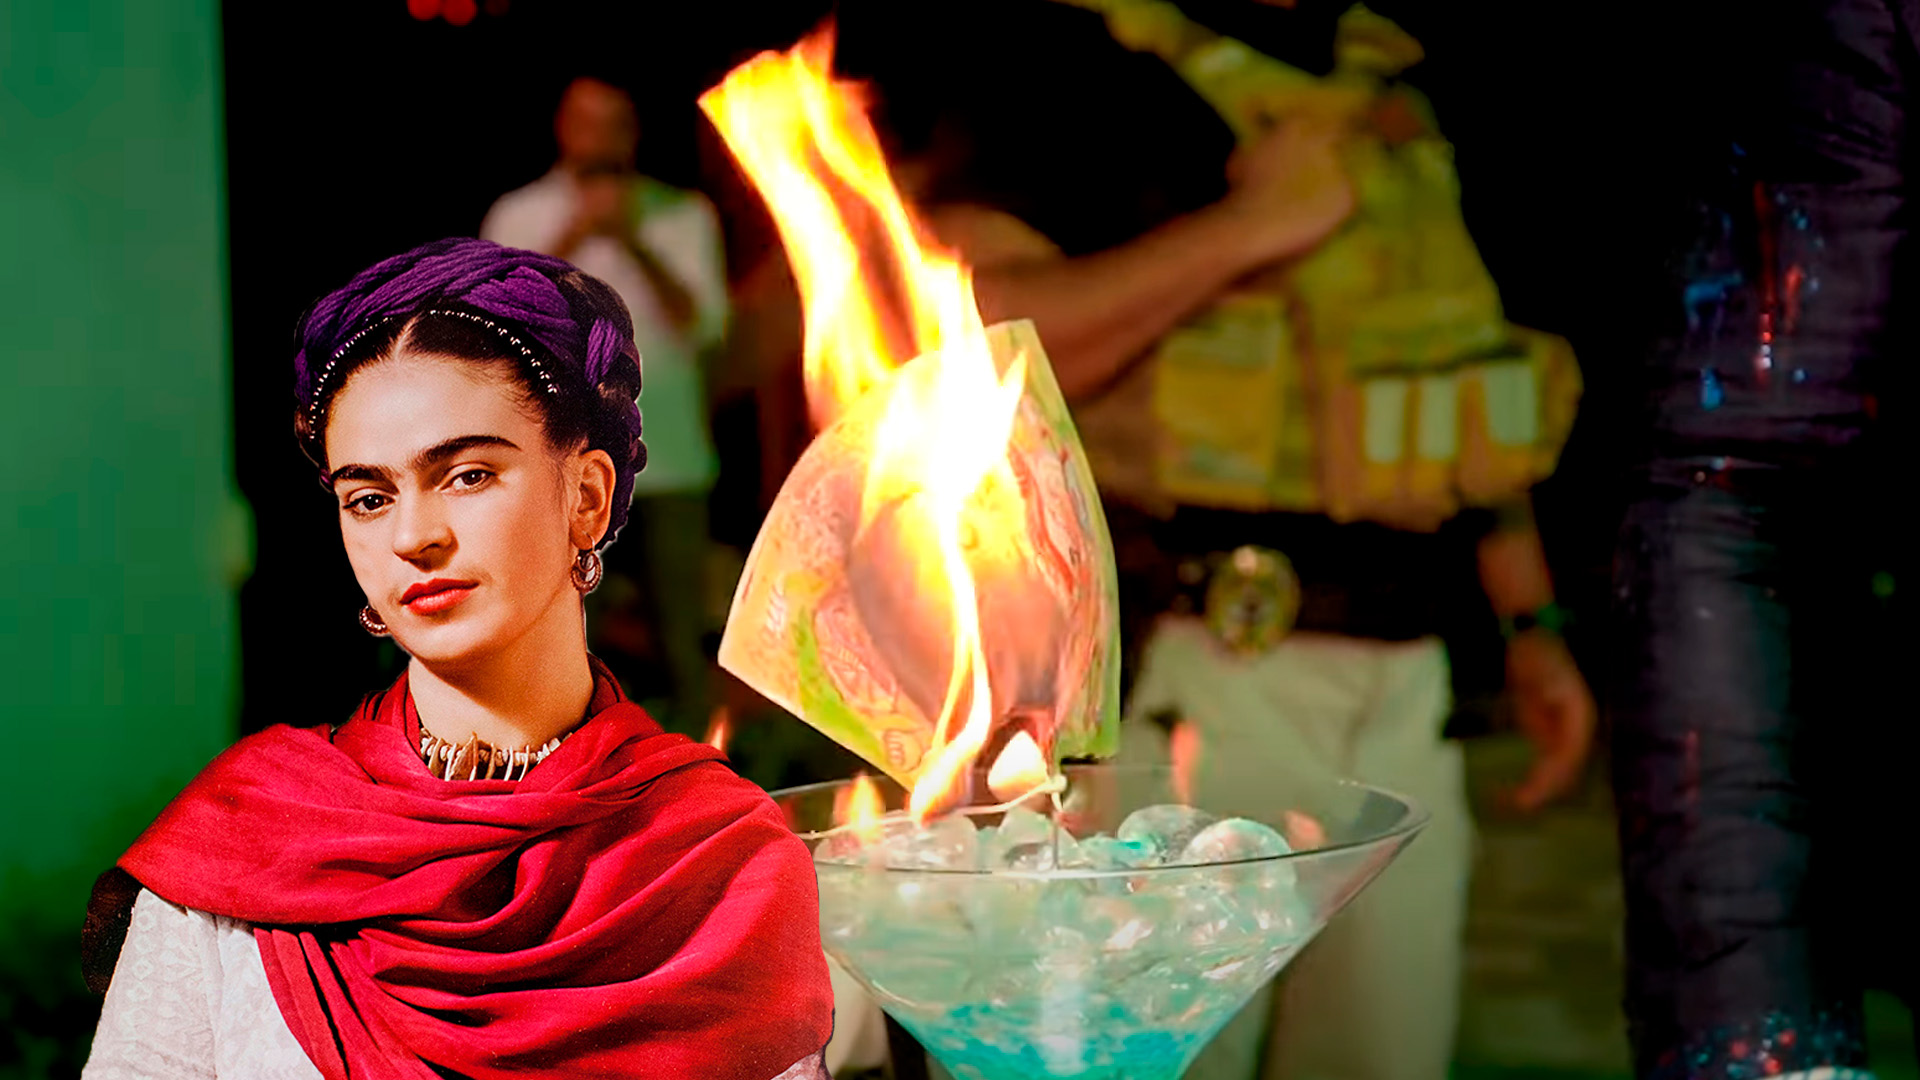 Investiga al millonario que quemó un dibujo de Frida Kahlo para venderlo como NFT 